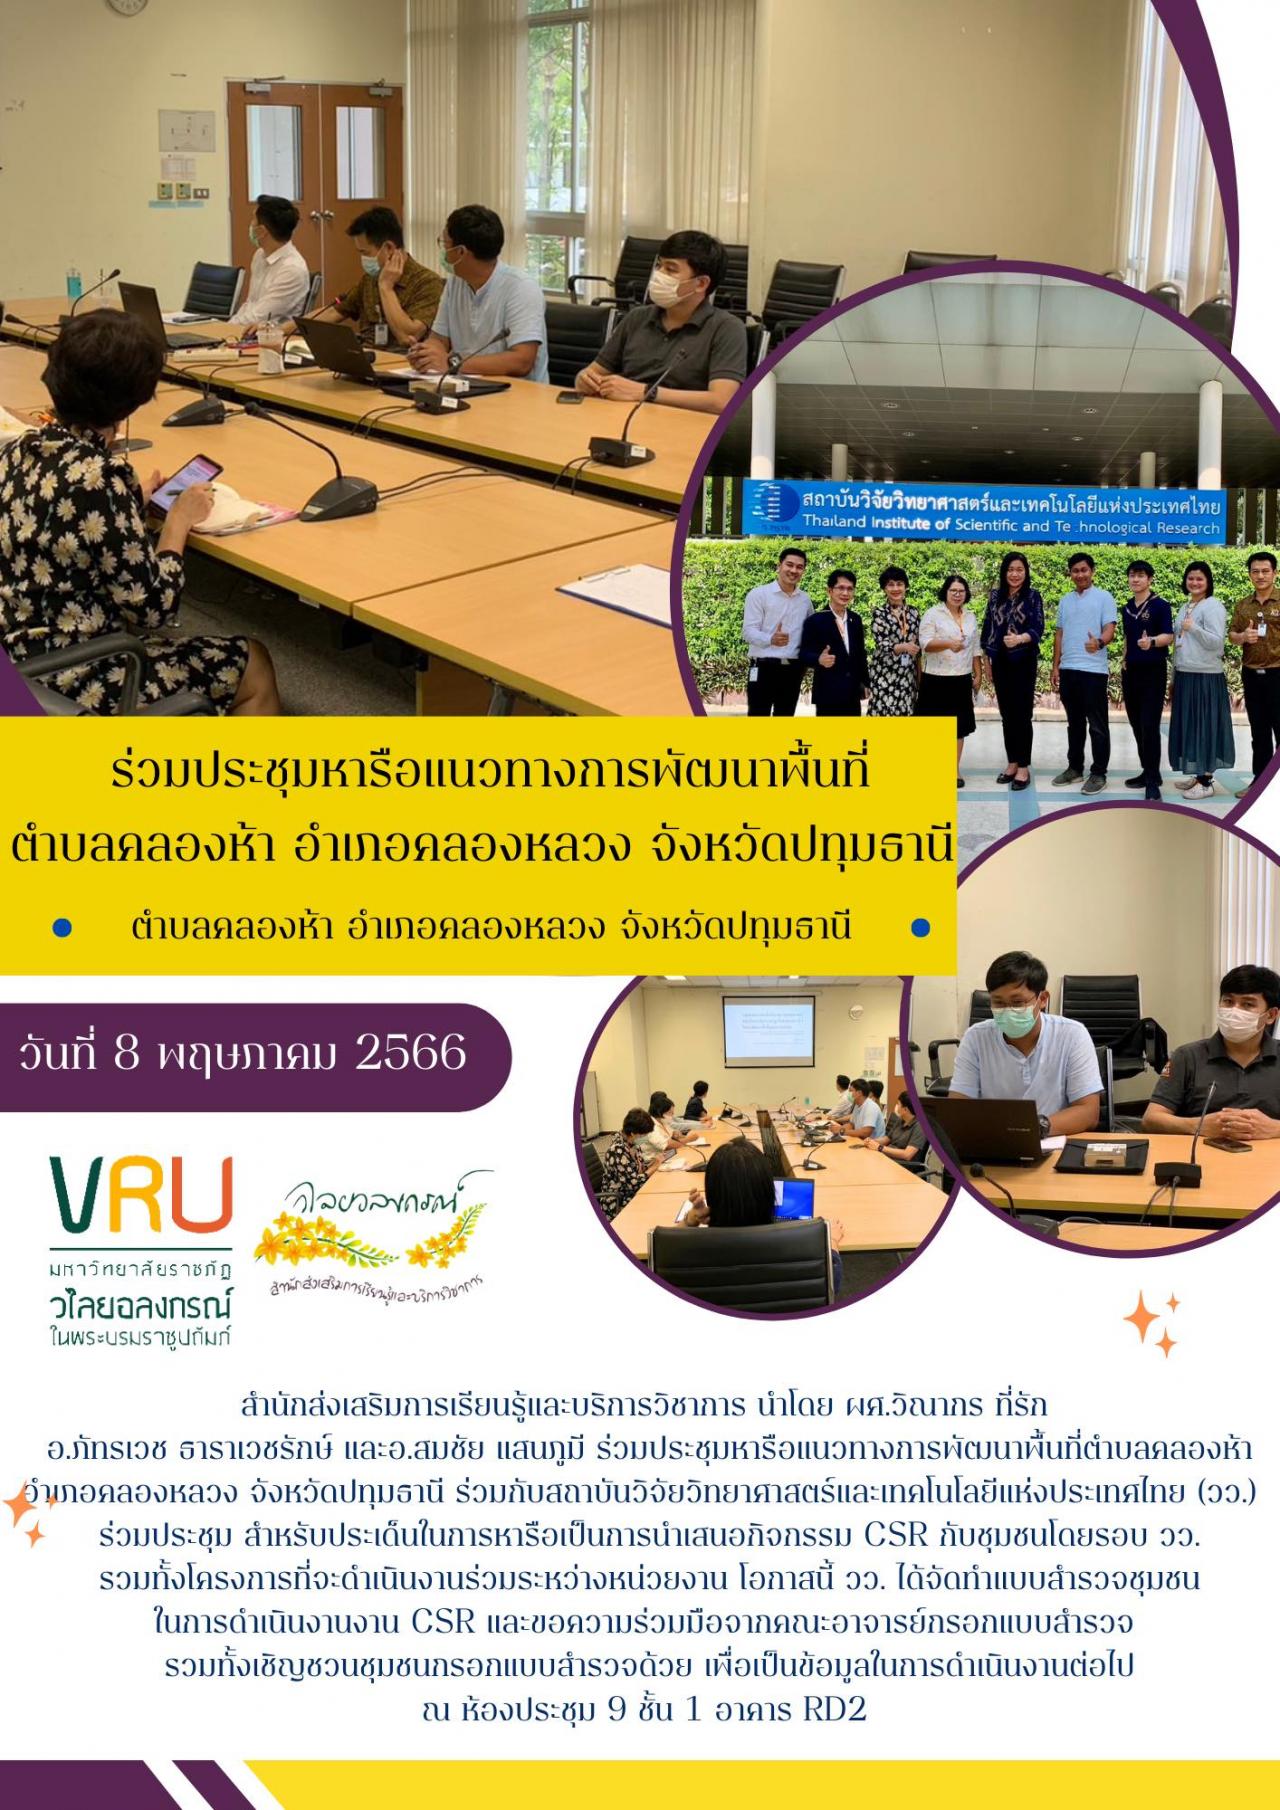  8 พฤษภาคม 2566 งานประชุมหารือแนวทางการพัฒนาพื้นที่ตำบลคลองห้าร่วมกับสถาบันวิจัยวิทยาศาสตร์และเทคโนโลยีแห่งประเทศไทย (วว.)